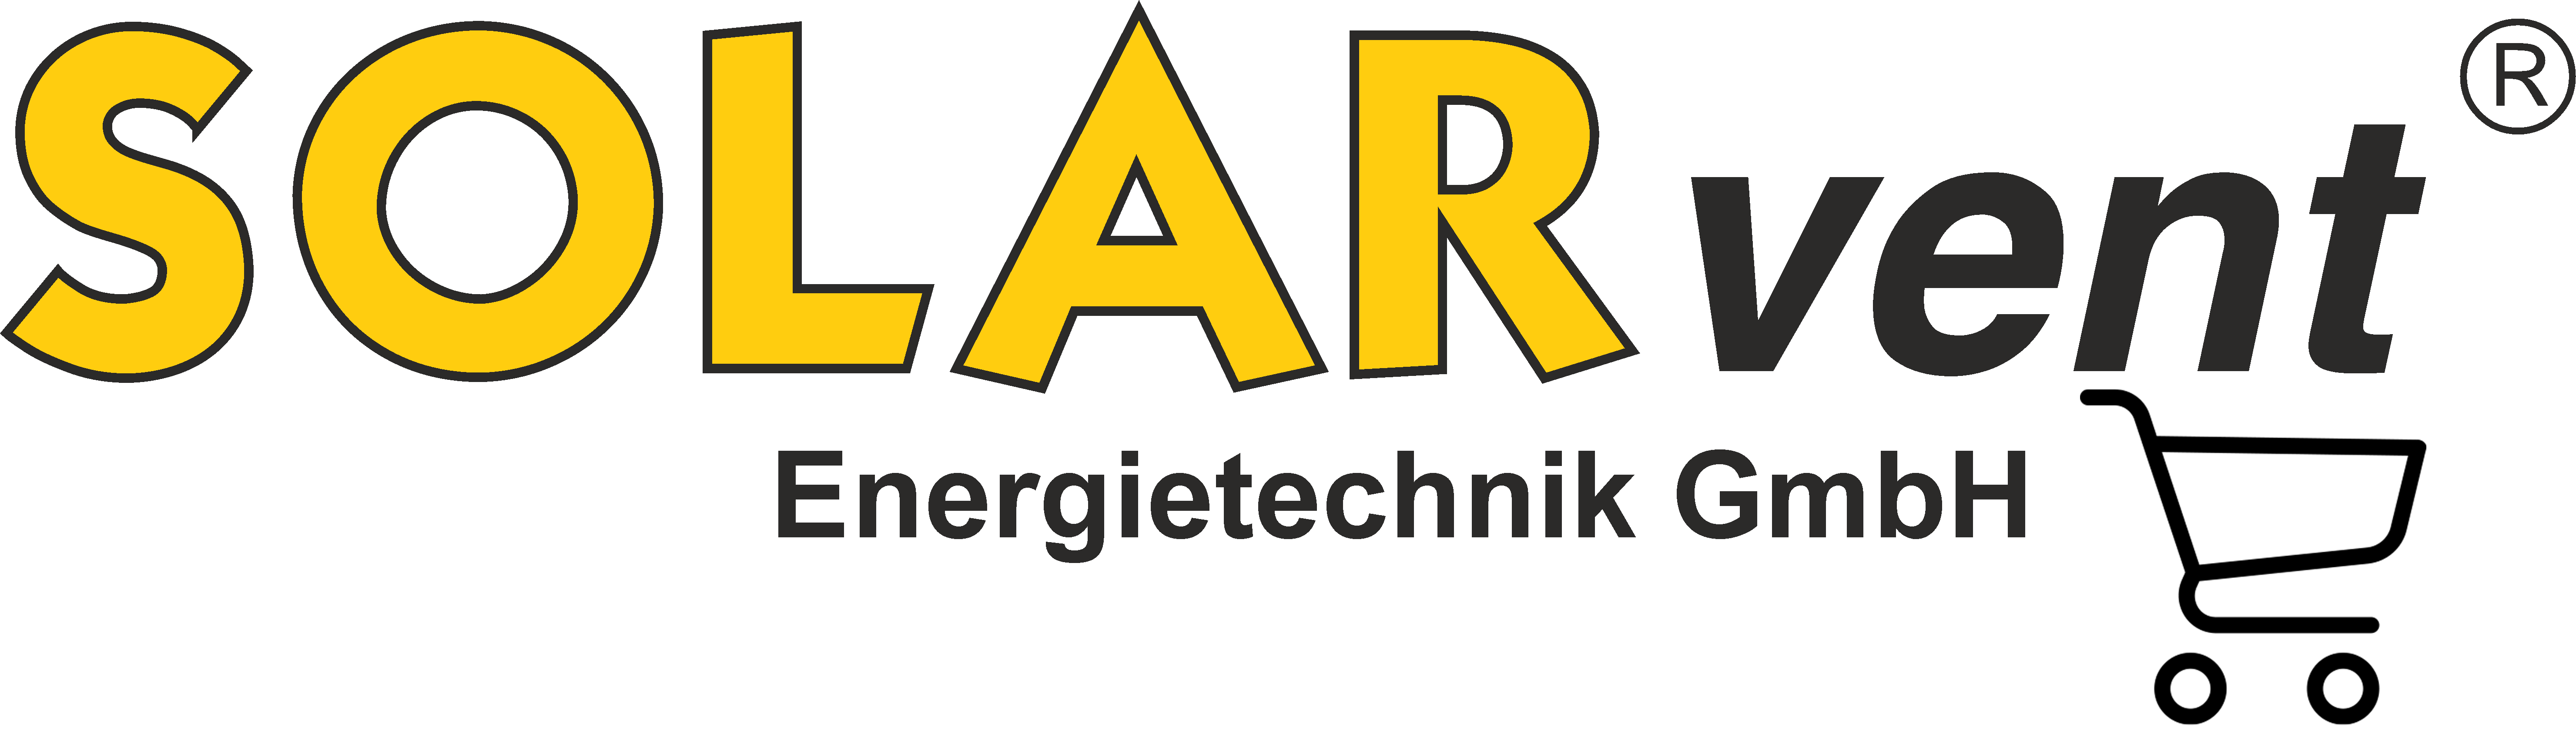 SOLARvent Energietechnik GmbH - Pelletheizungen und Solartechnik-Logo